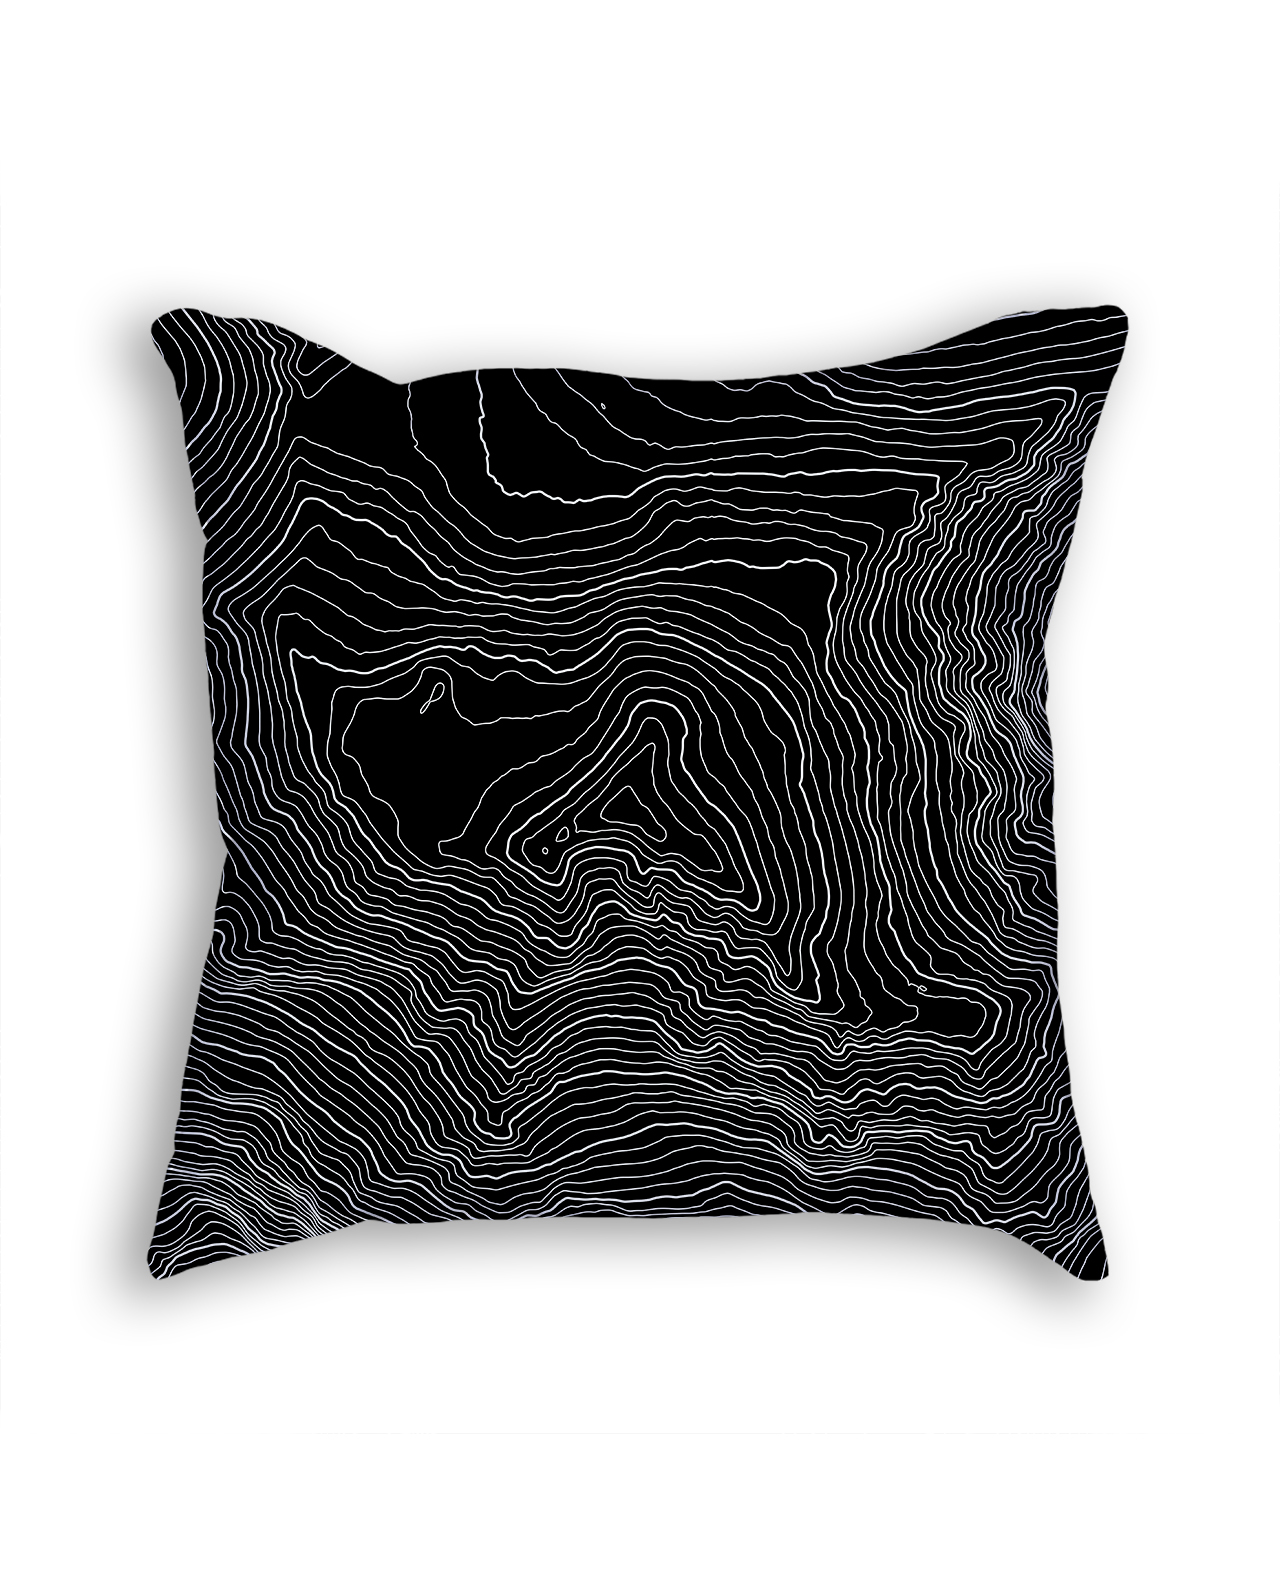 Denali Alaska USA Decorative Throw Pillow Black